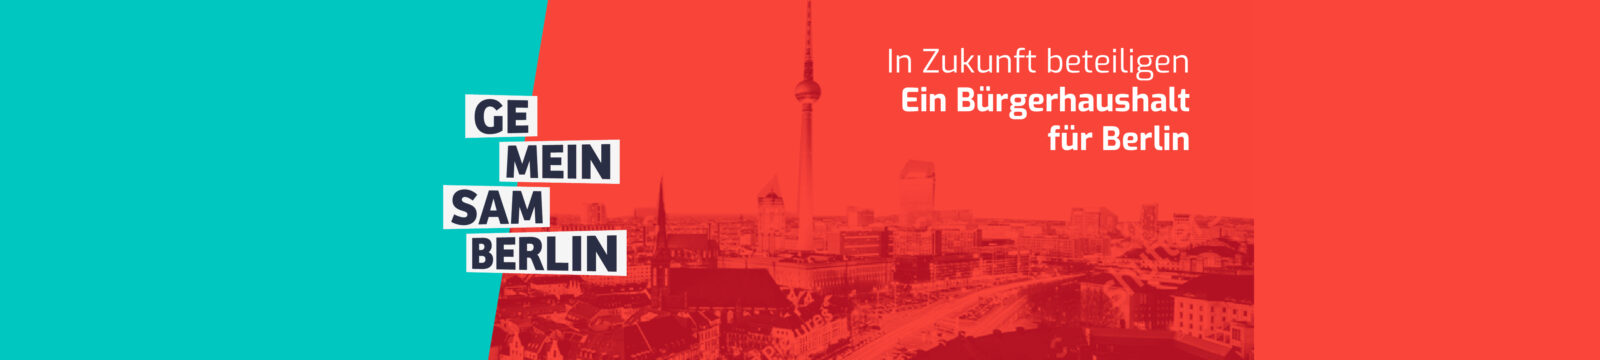 Skyline von Berlin, darüber das Logo von "Gemeinsam Berlin" und der Text: In Zukunft beteiligen. Ein Bürgerhaushalt für Berlin.